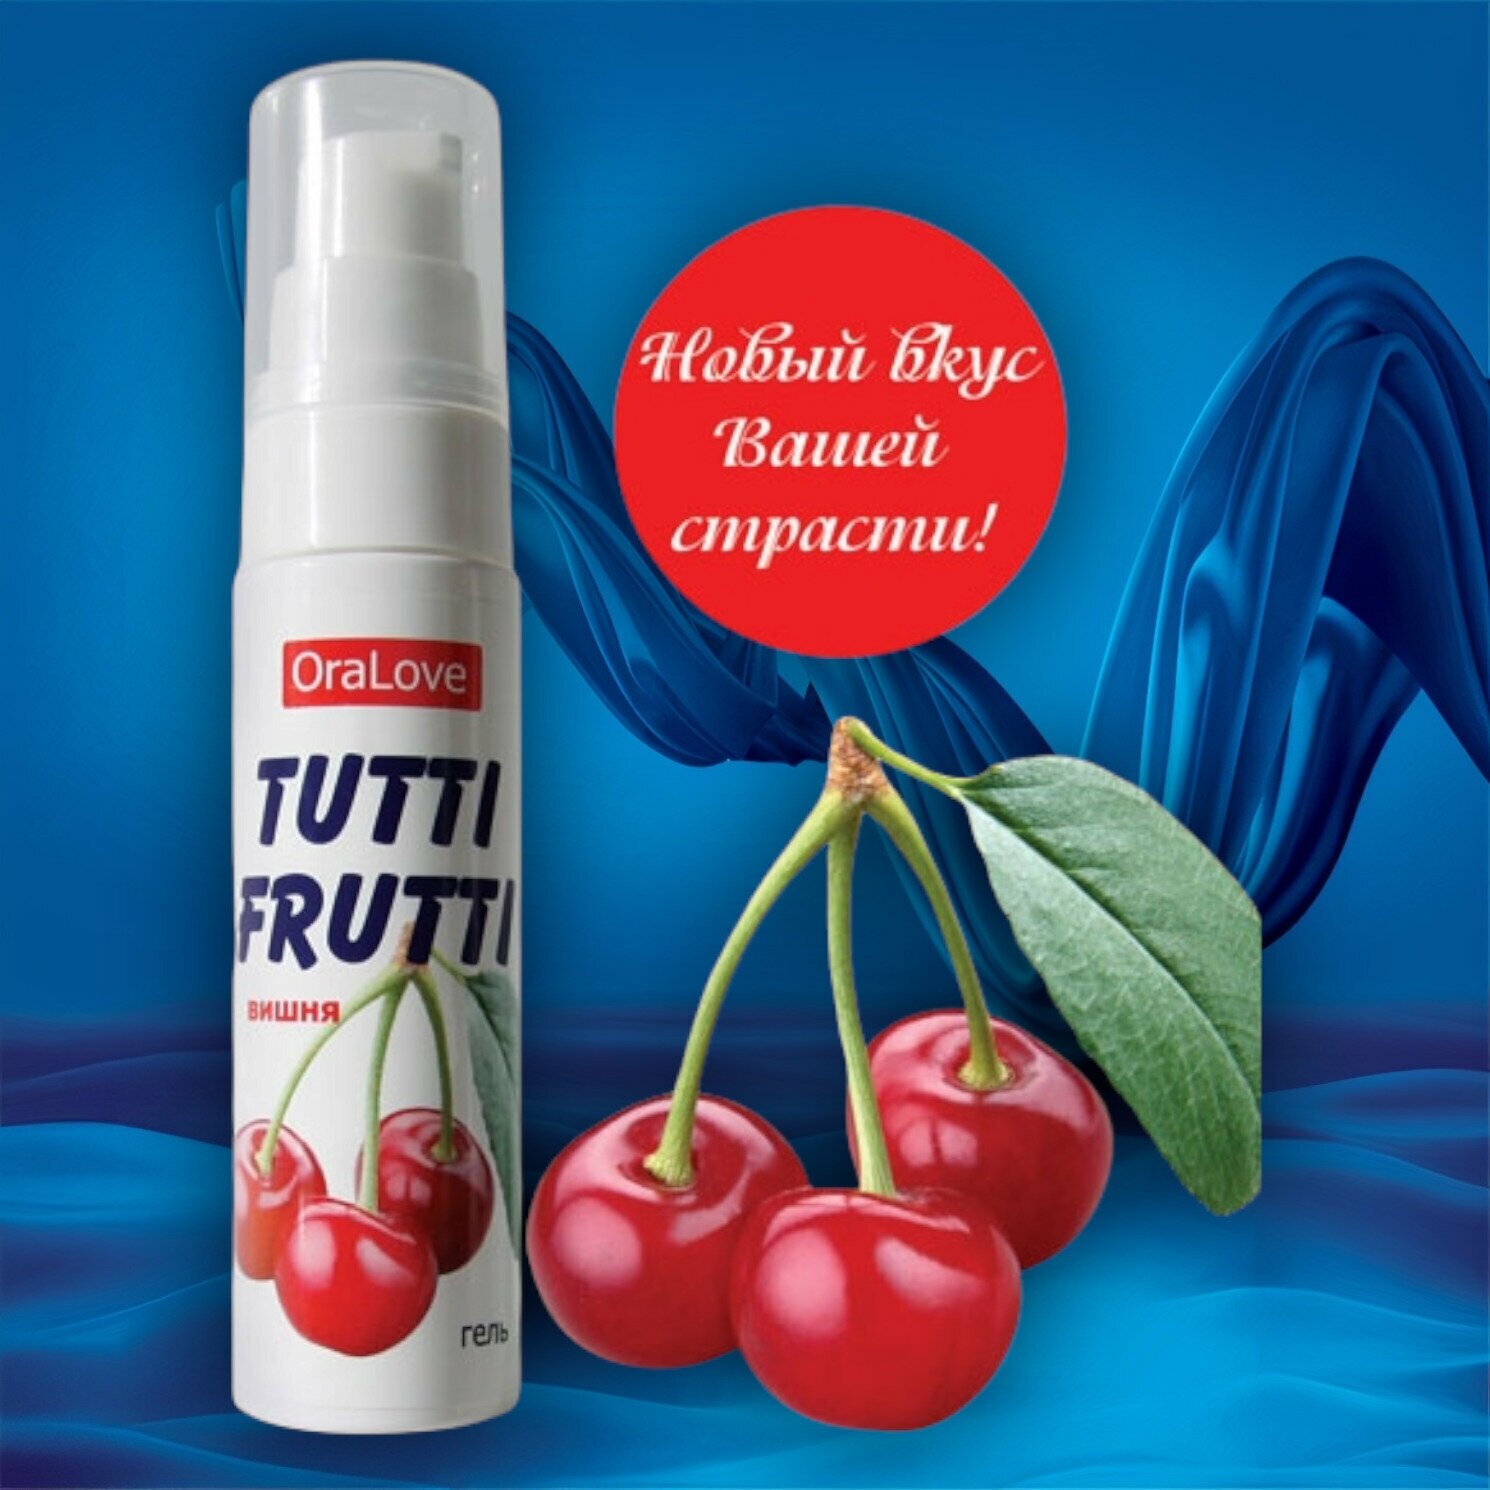 Гель-смазка Tutti-frutti с вишнёвым вкусом - 30 гр.